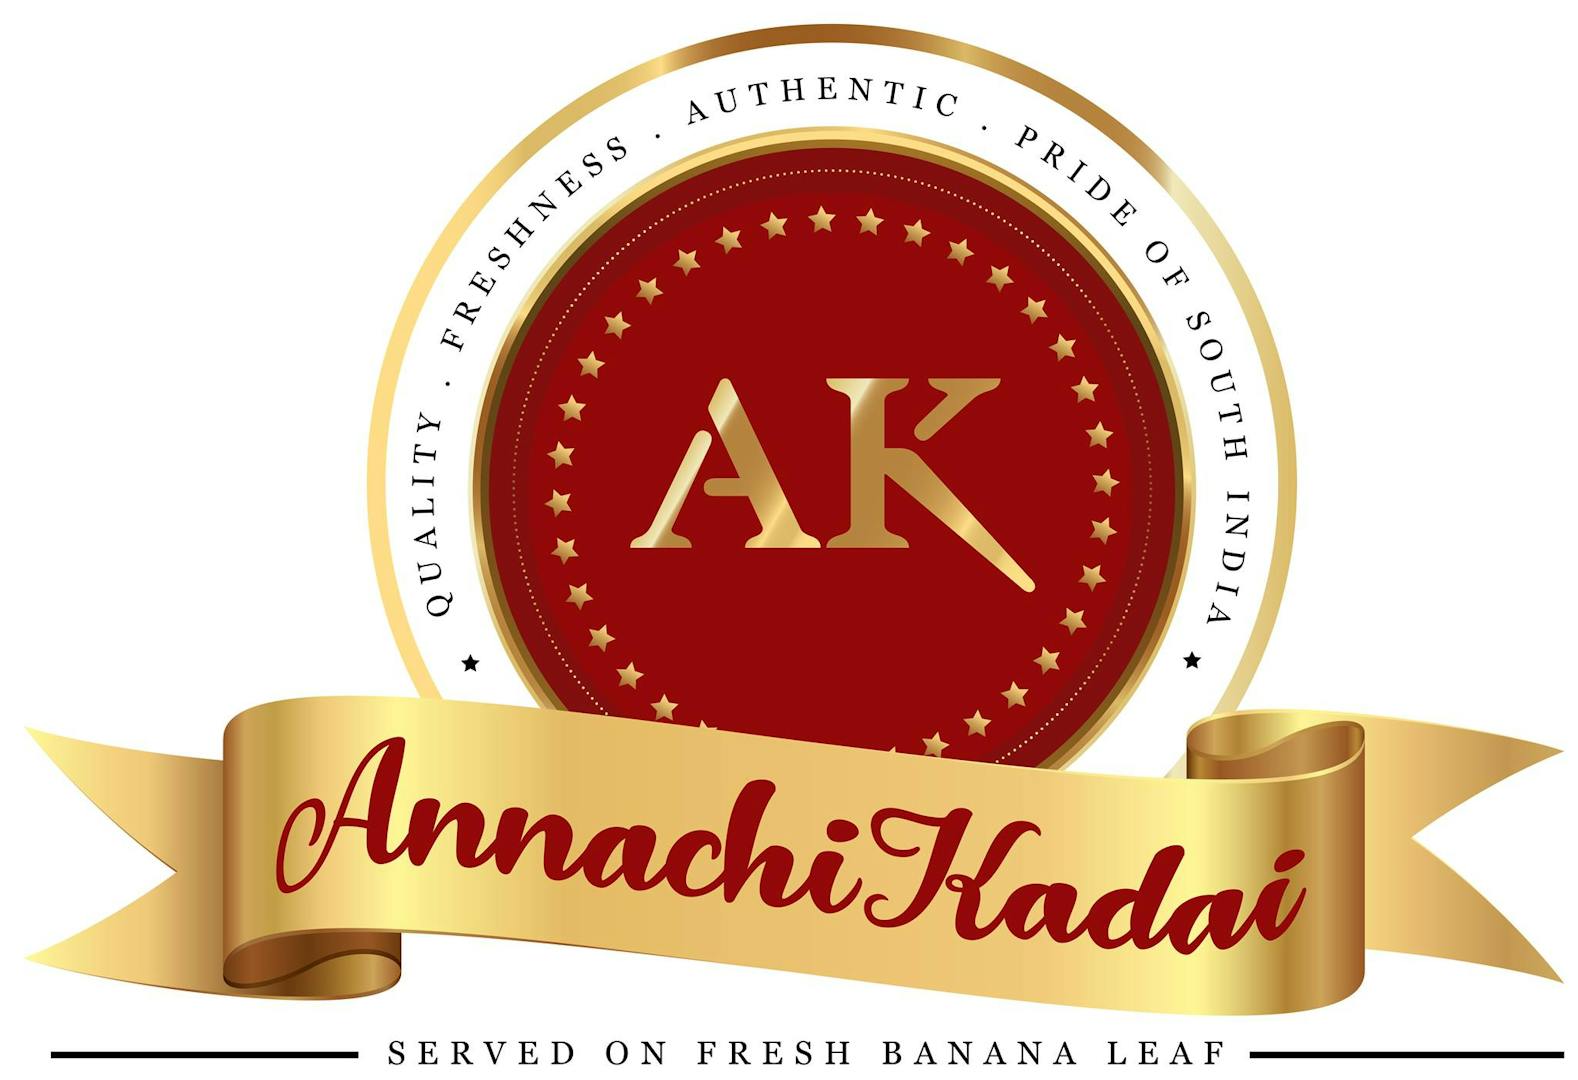 Annachikadai